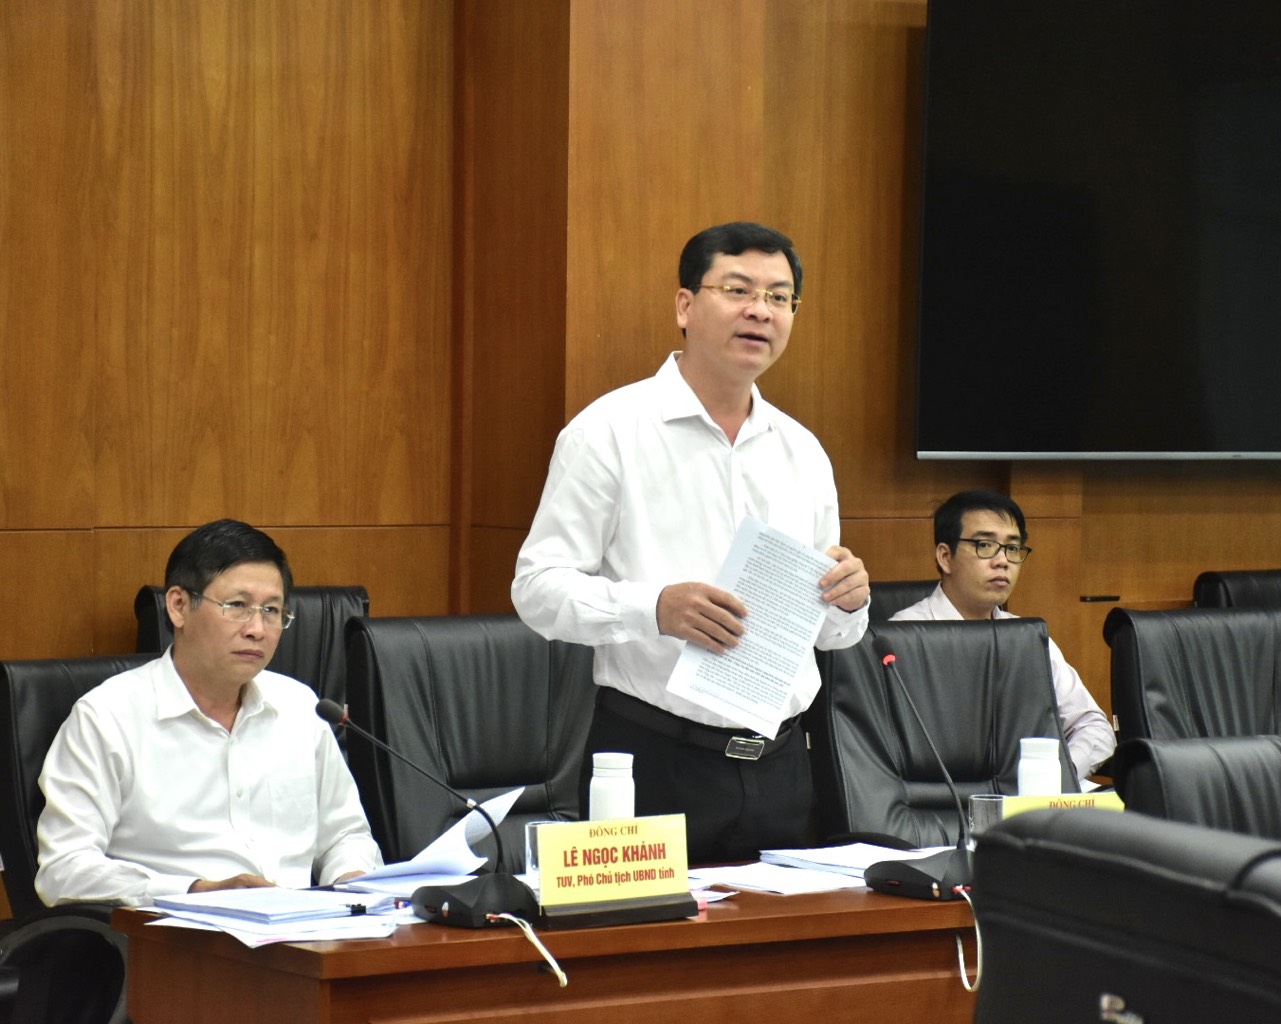 Ông Nguyễn Công Vinh, Phó Chủ tịch UBND tỉnh báo cáo làm rõ một số nội dung về định hướng phát triển và đề xuất của tỉnh với Đoàn công tác và Bộ Kế hoạch-Đầu tư.